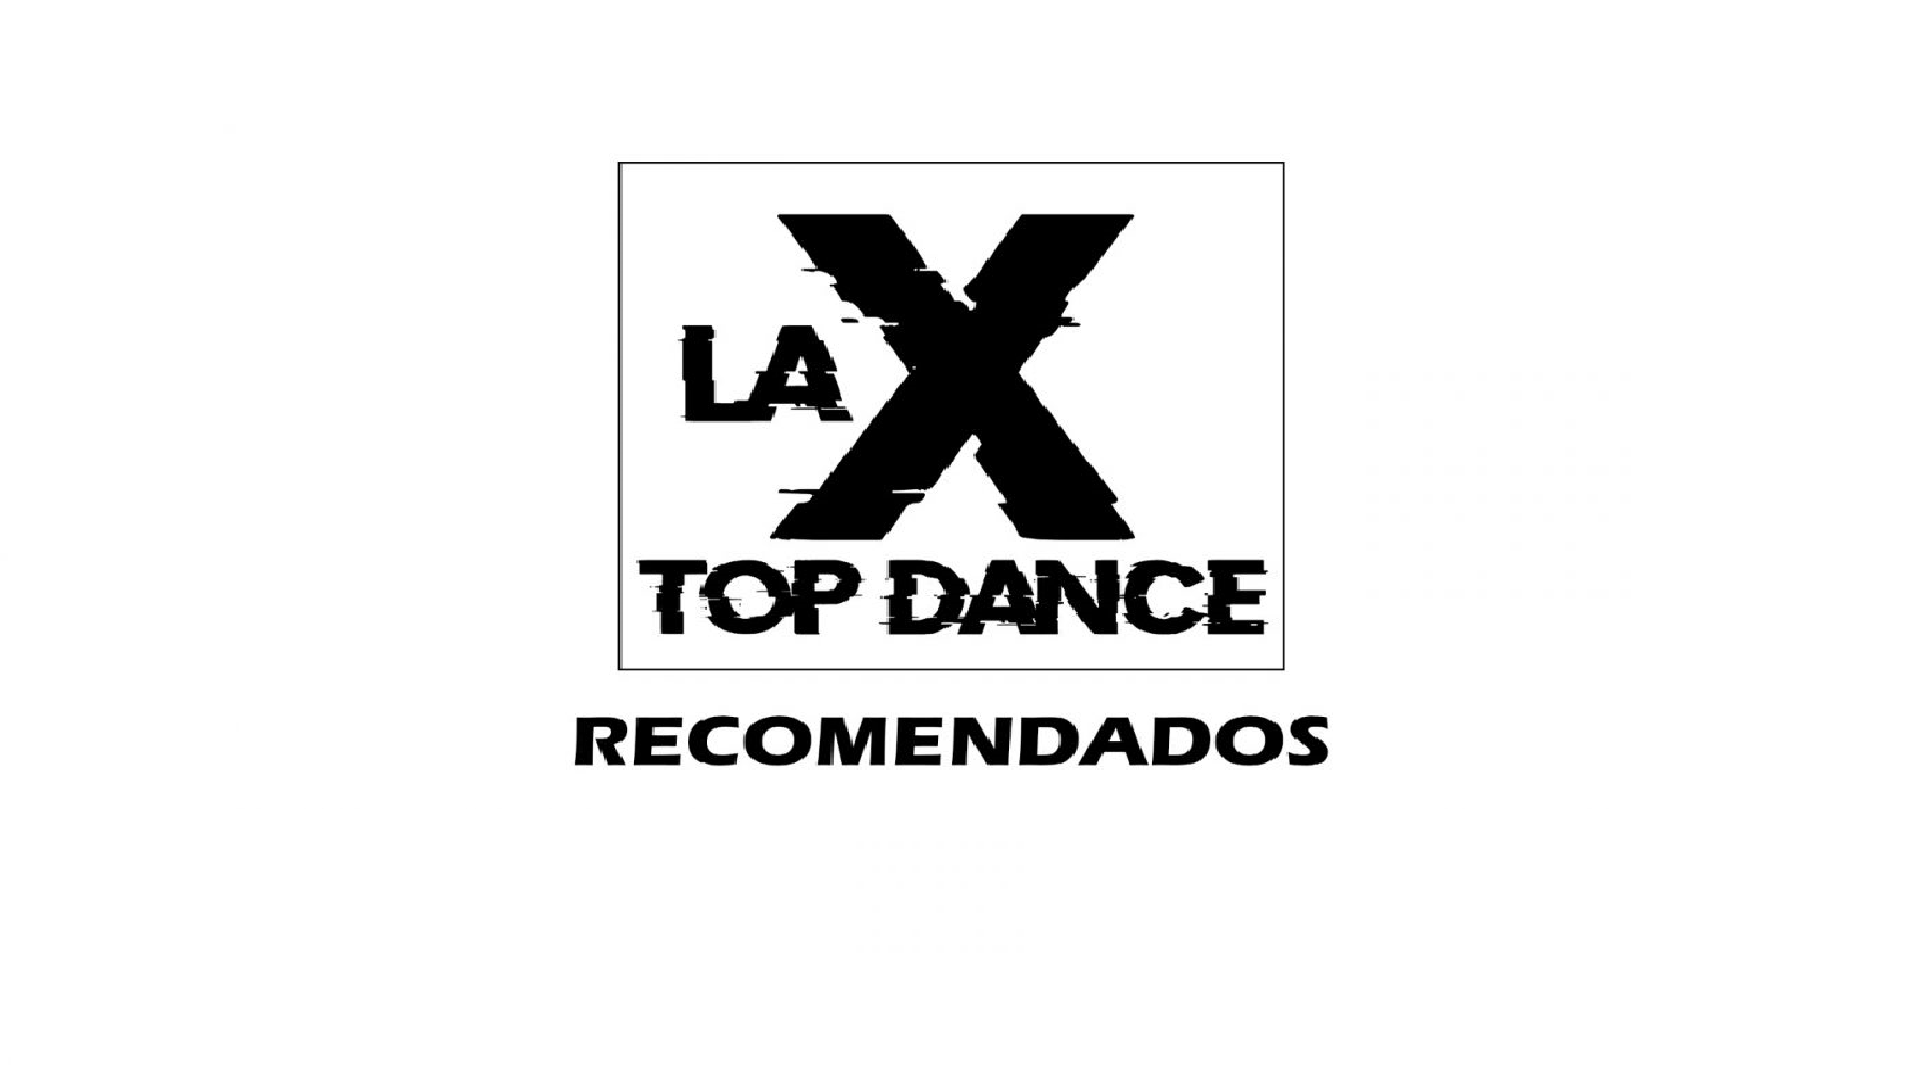 LA X TOP DANCE RECOMENDADOS